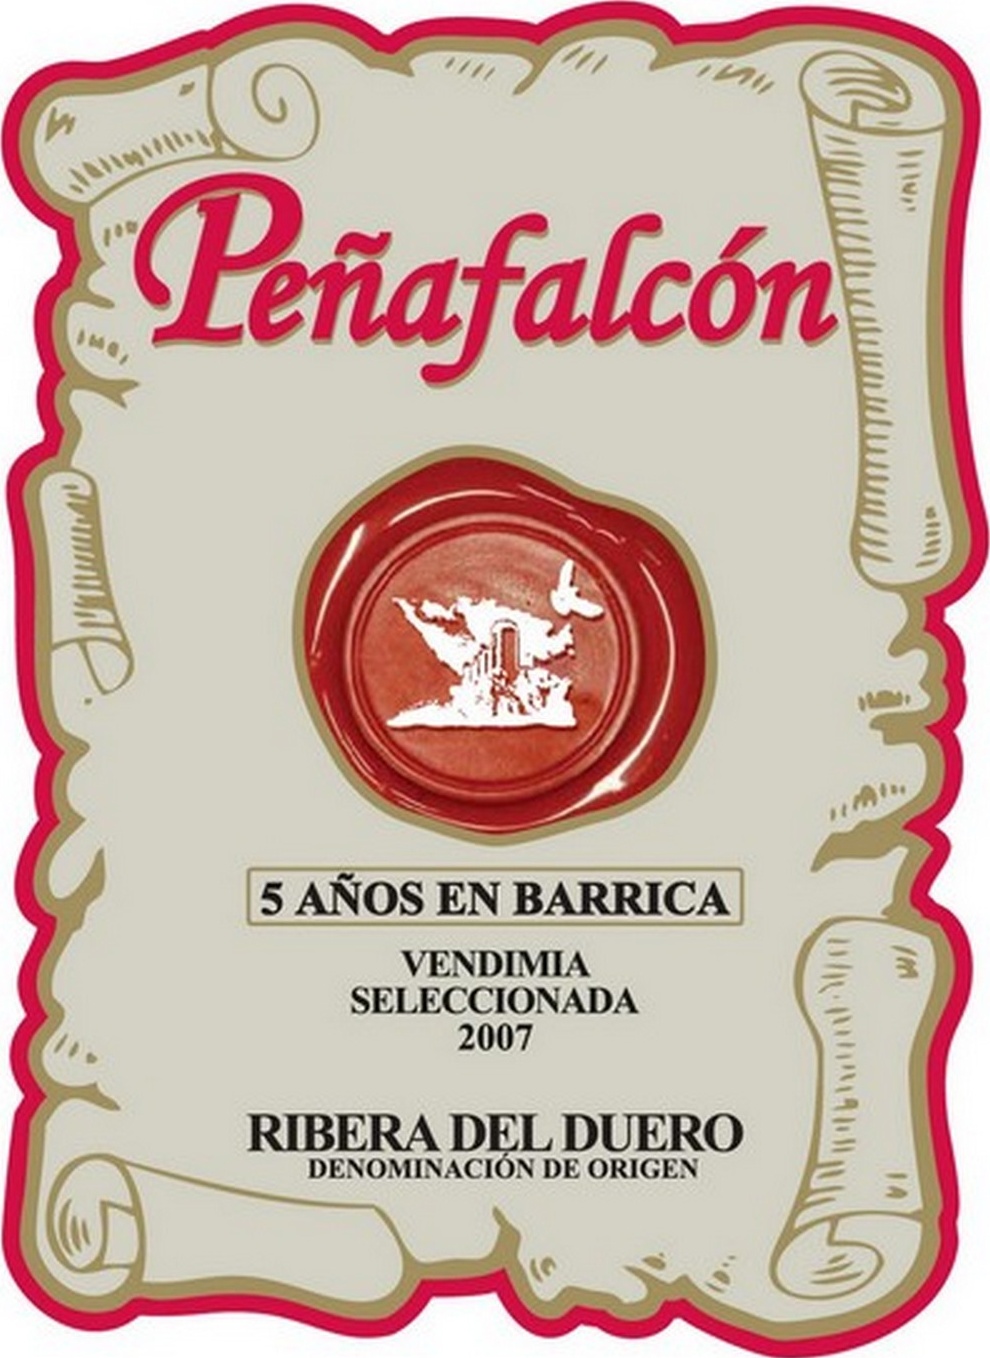 penafalcon-vendimia-seleccionada-2007